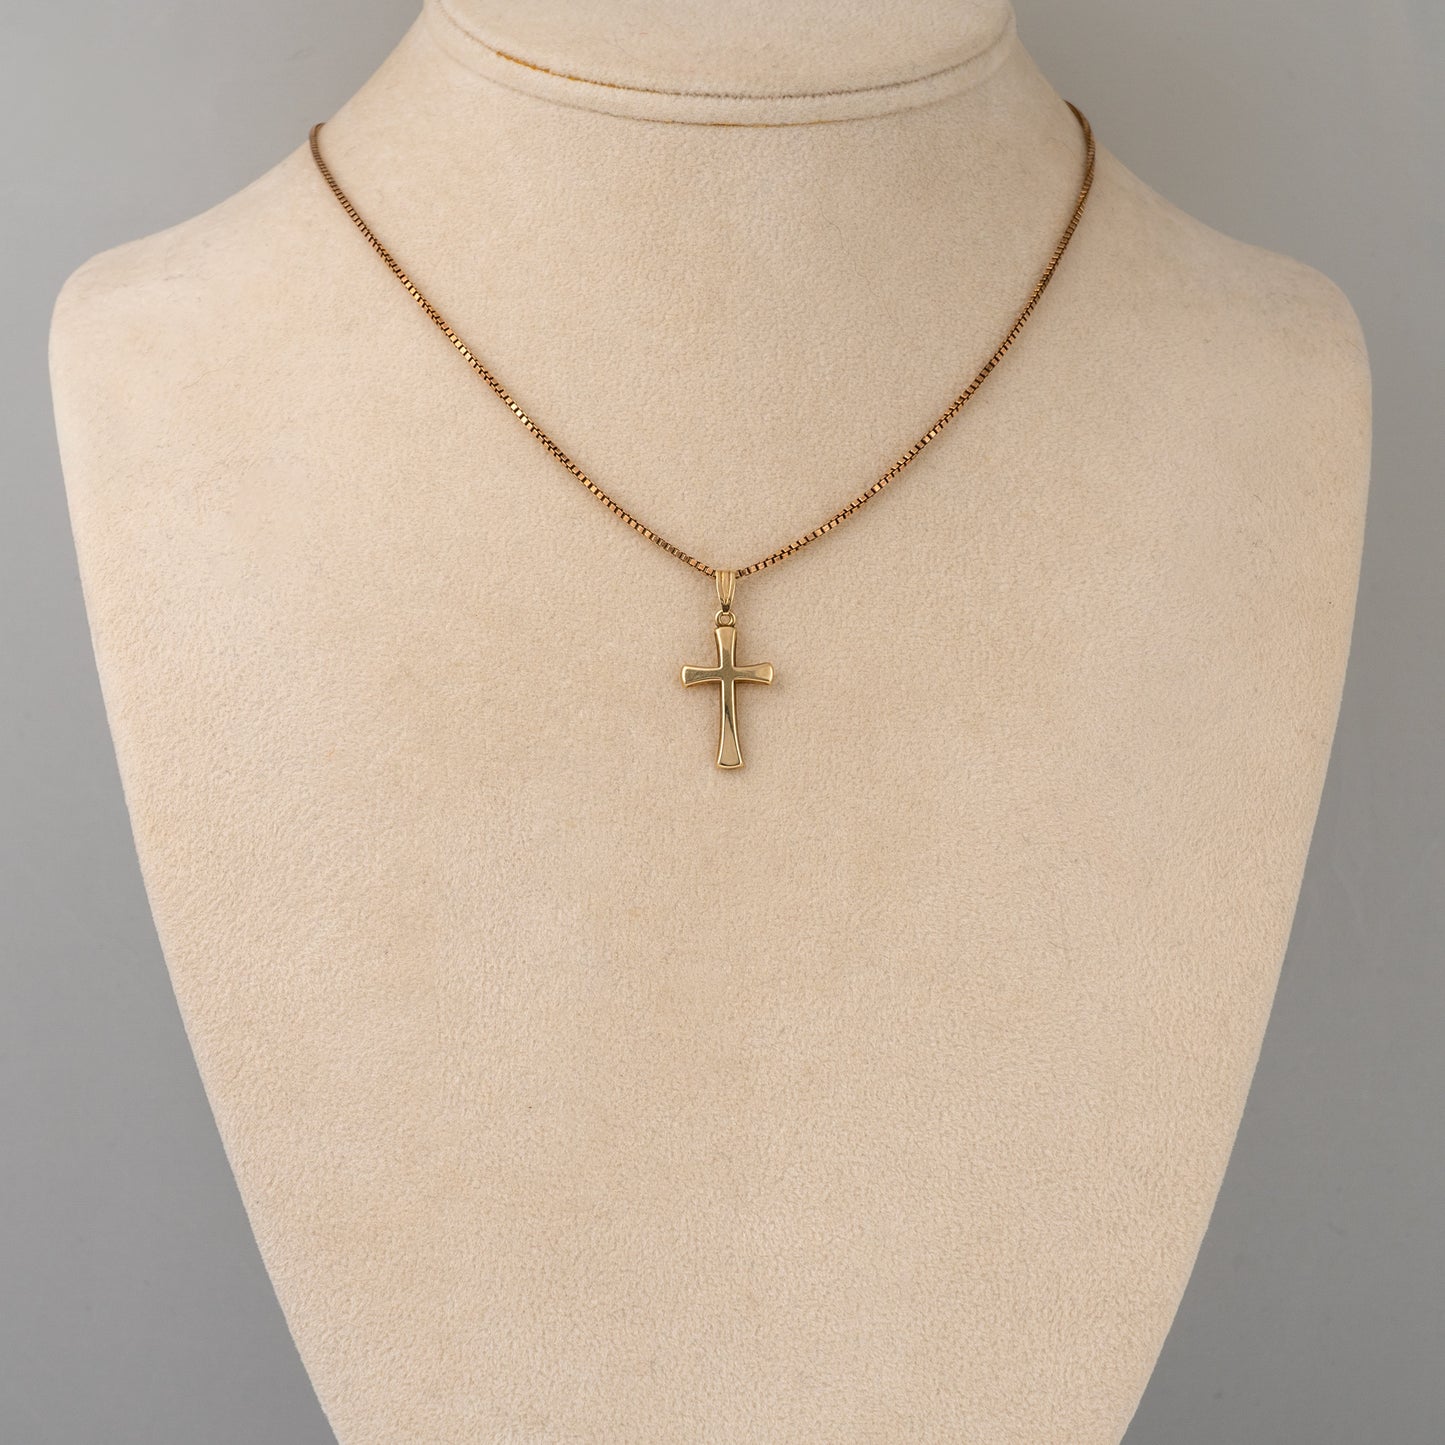 vintage gold cross necklace pendant